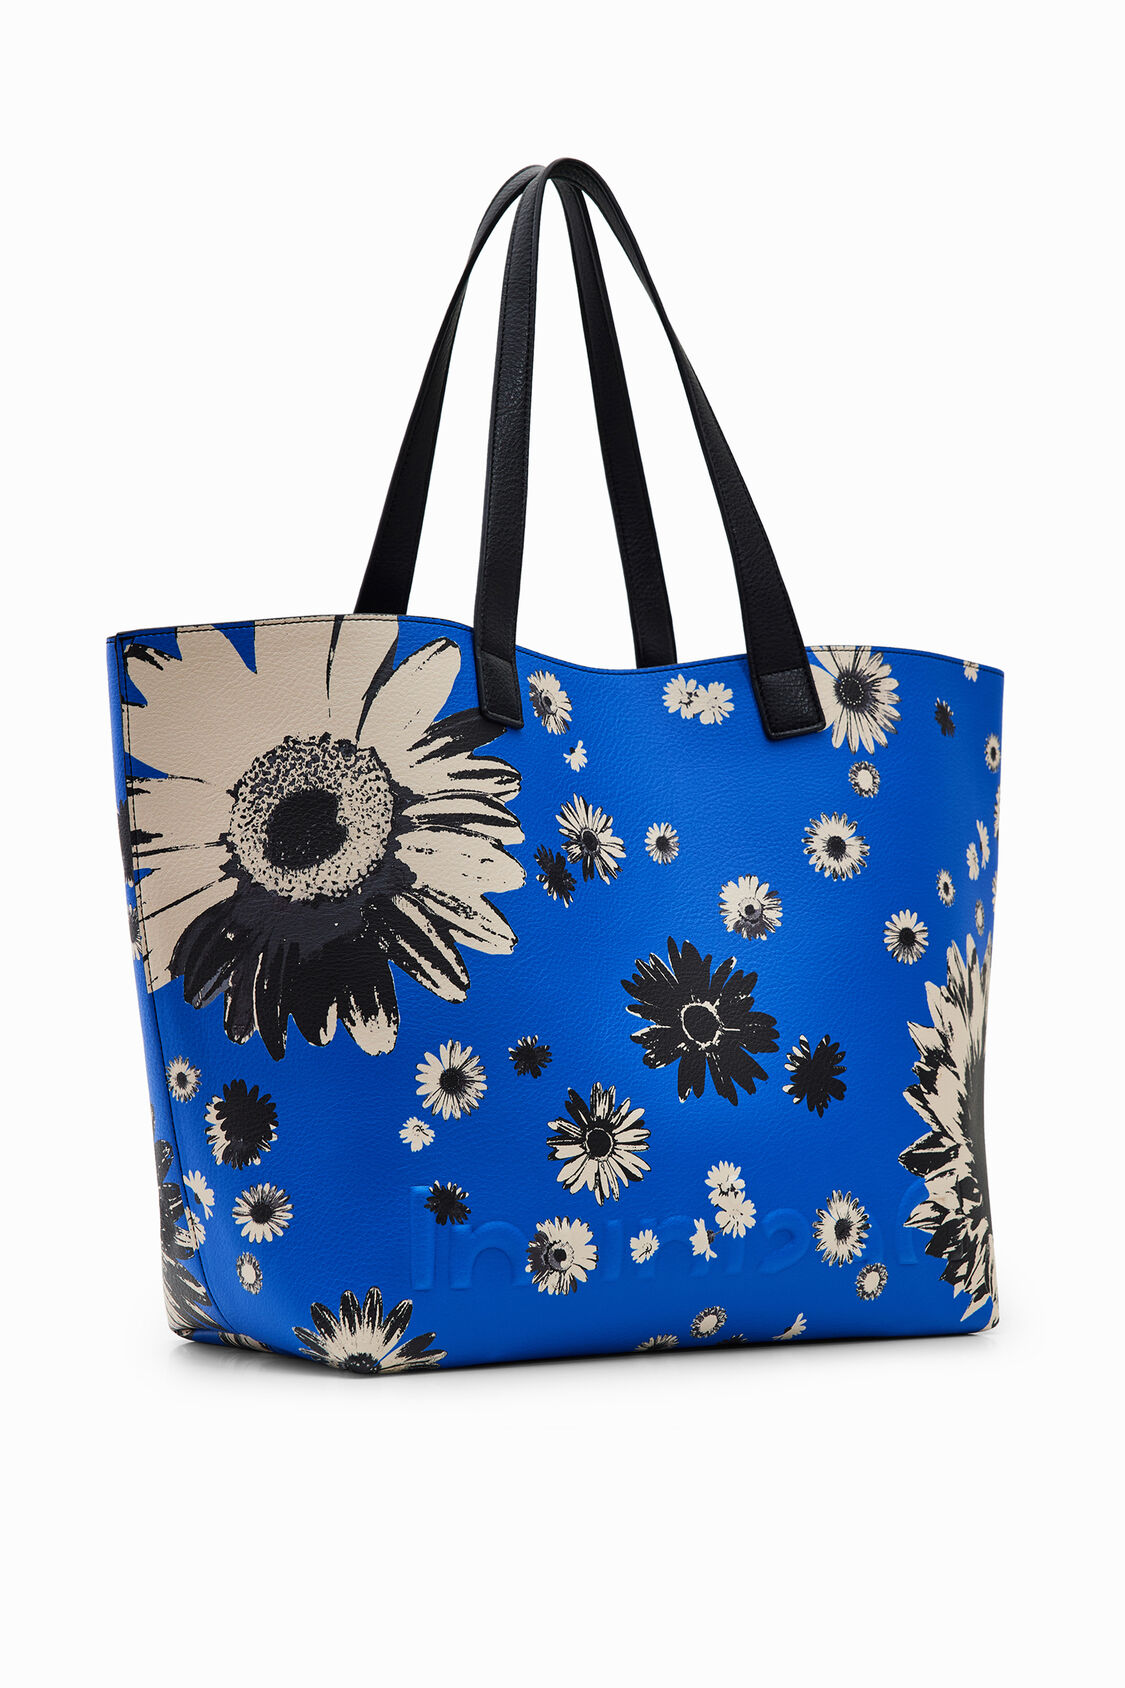 Shopper extra reversible floral | Desigual.com